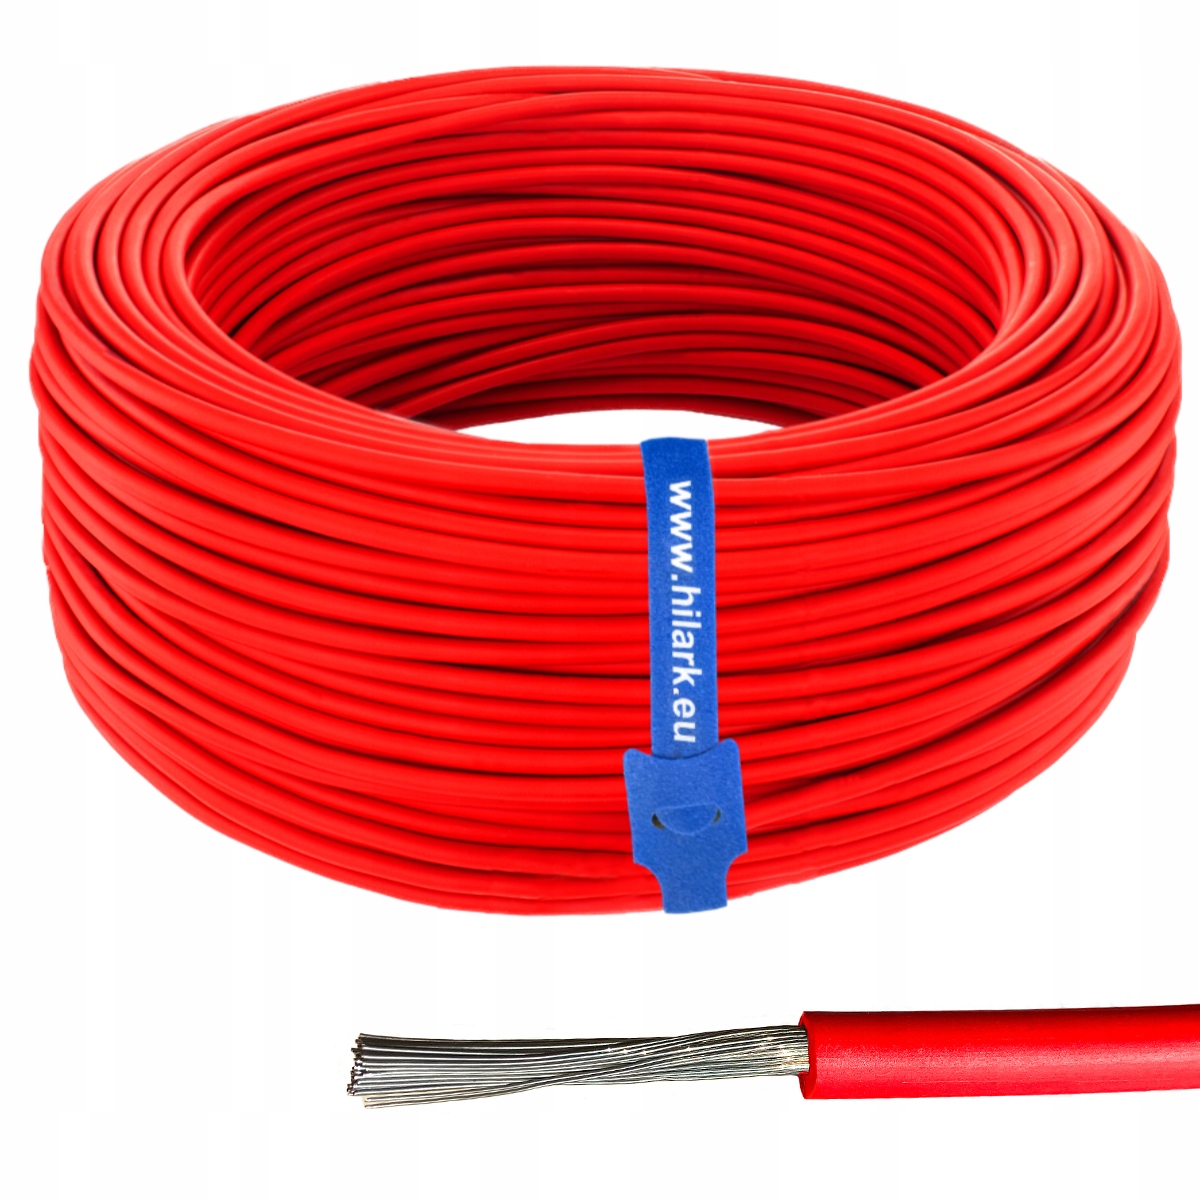 Jednožilový kabel 1,5mm2 (černý) za 40 Kč - Allegro